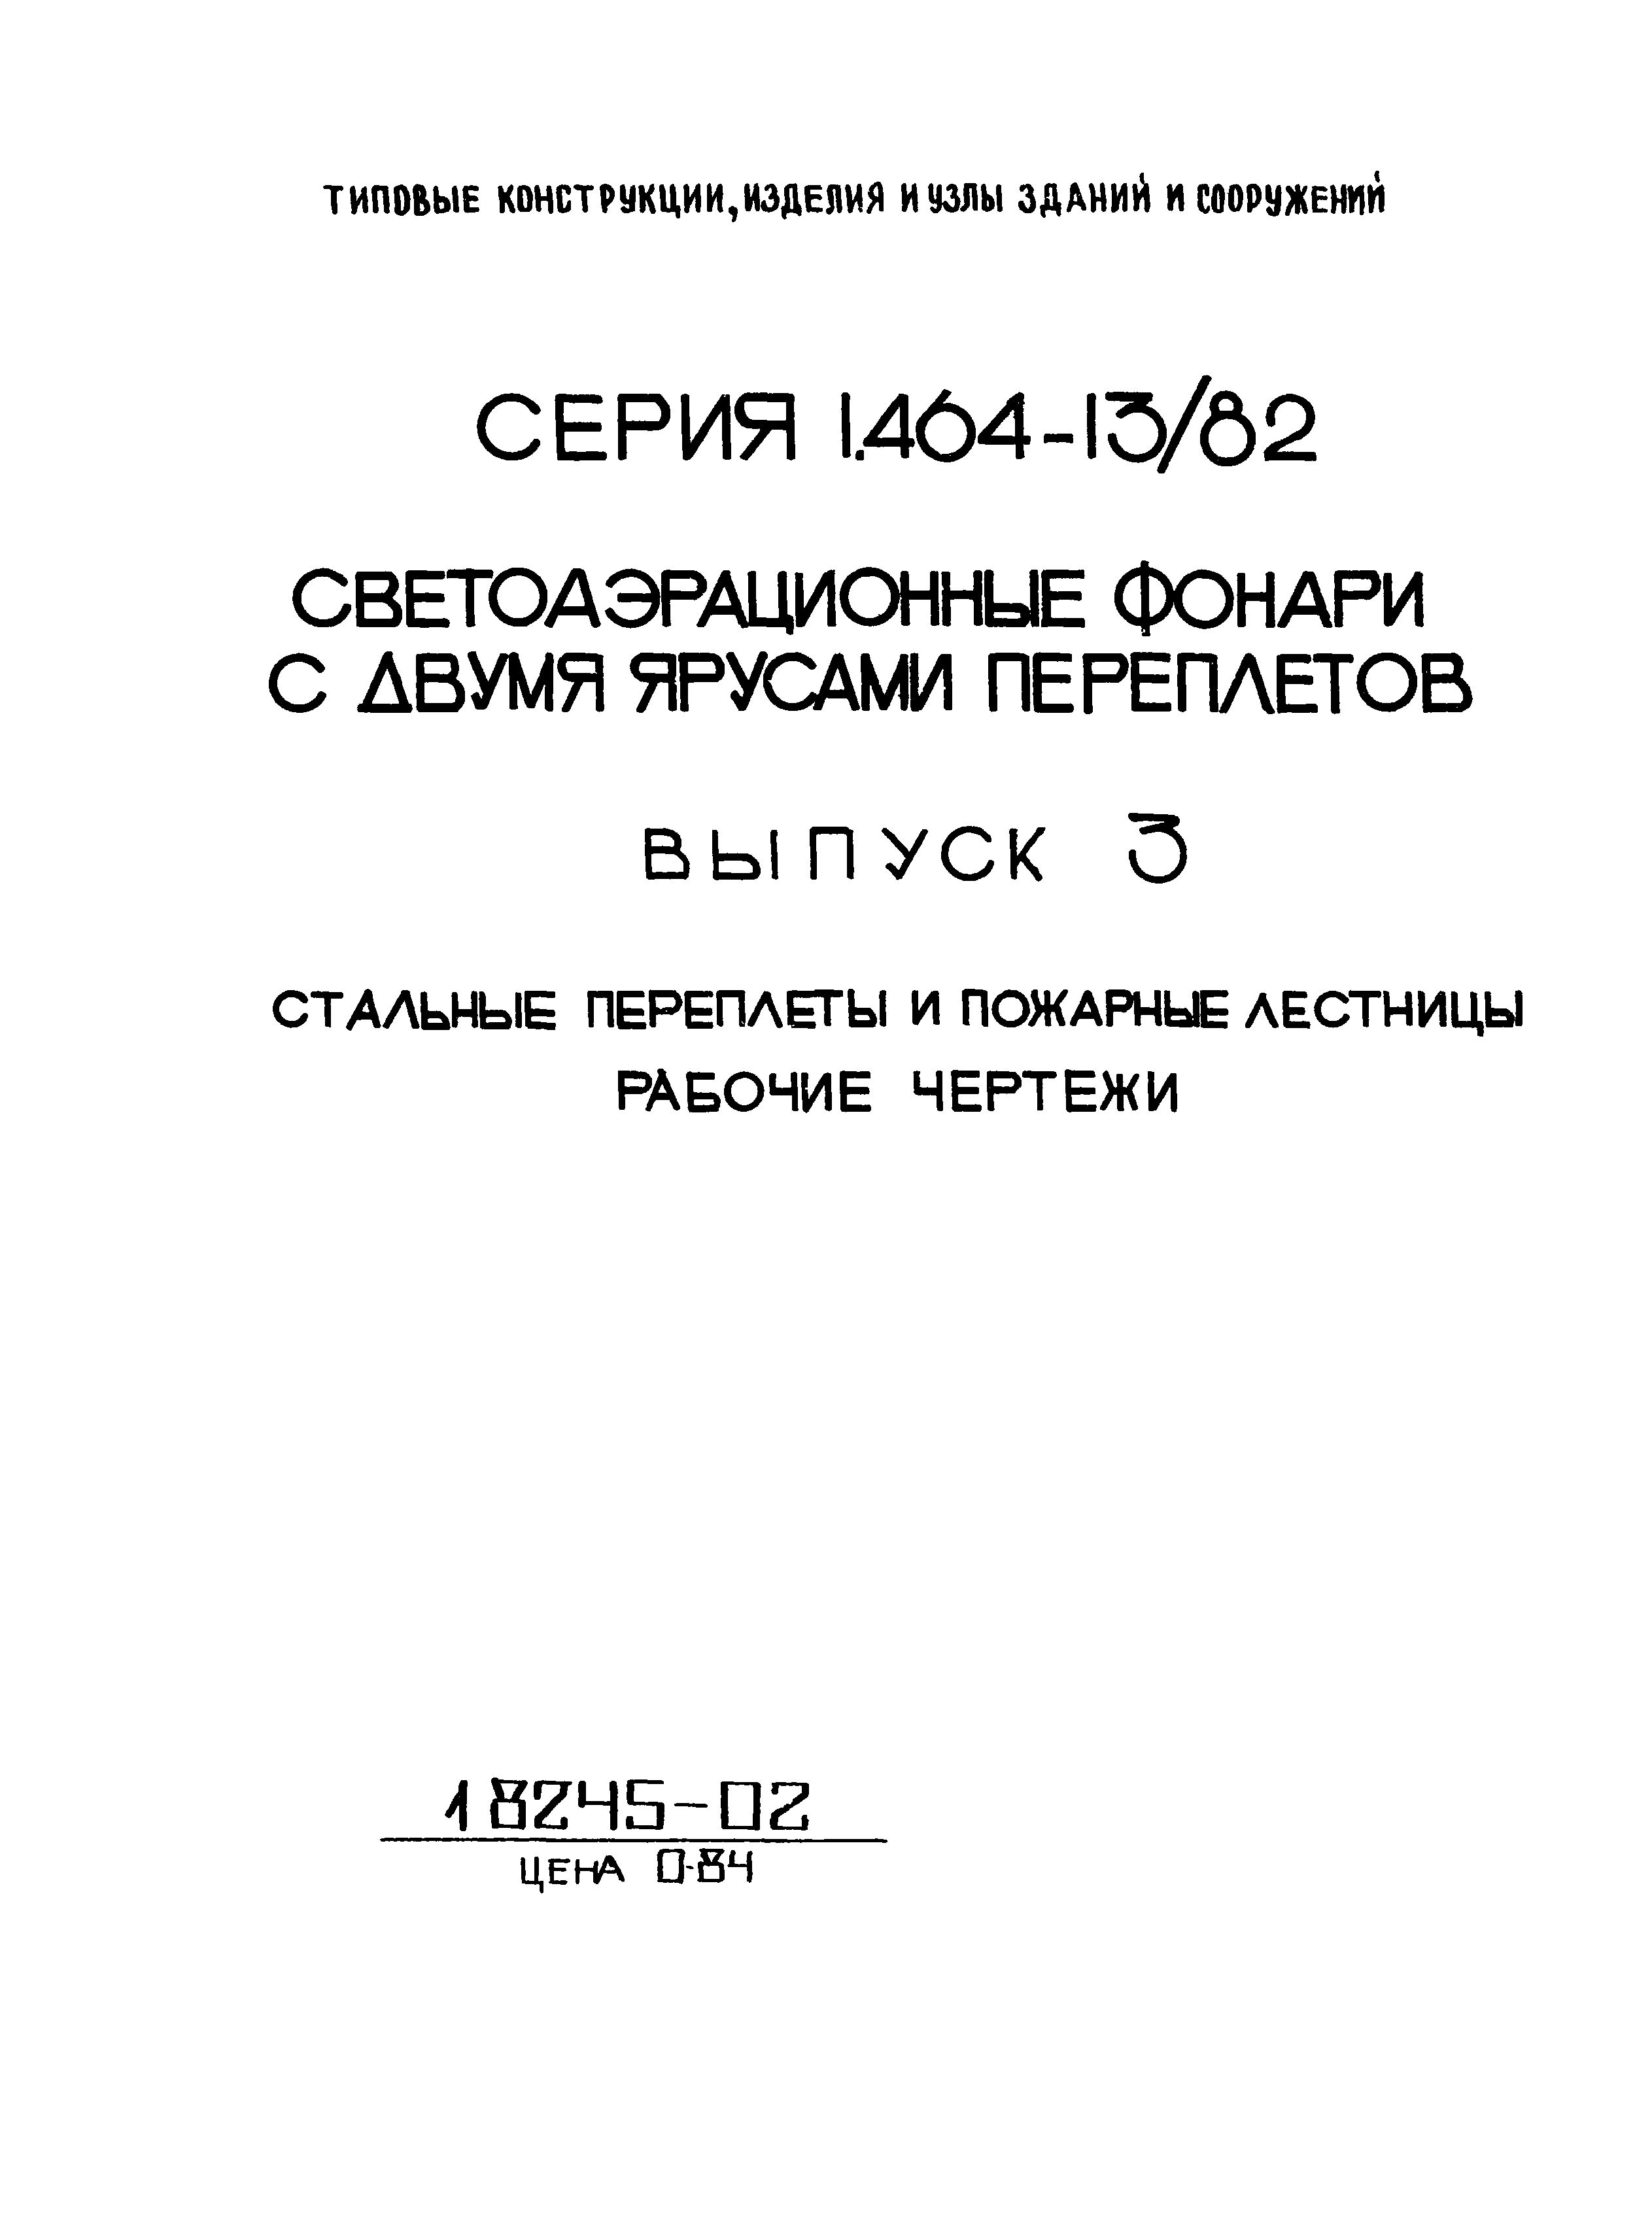 Серия 1.464-13/82